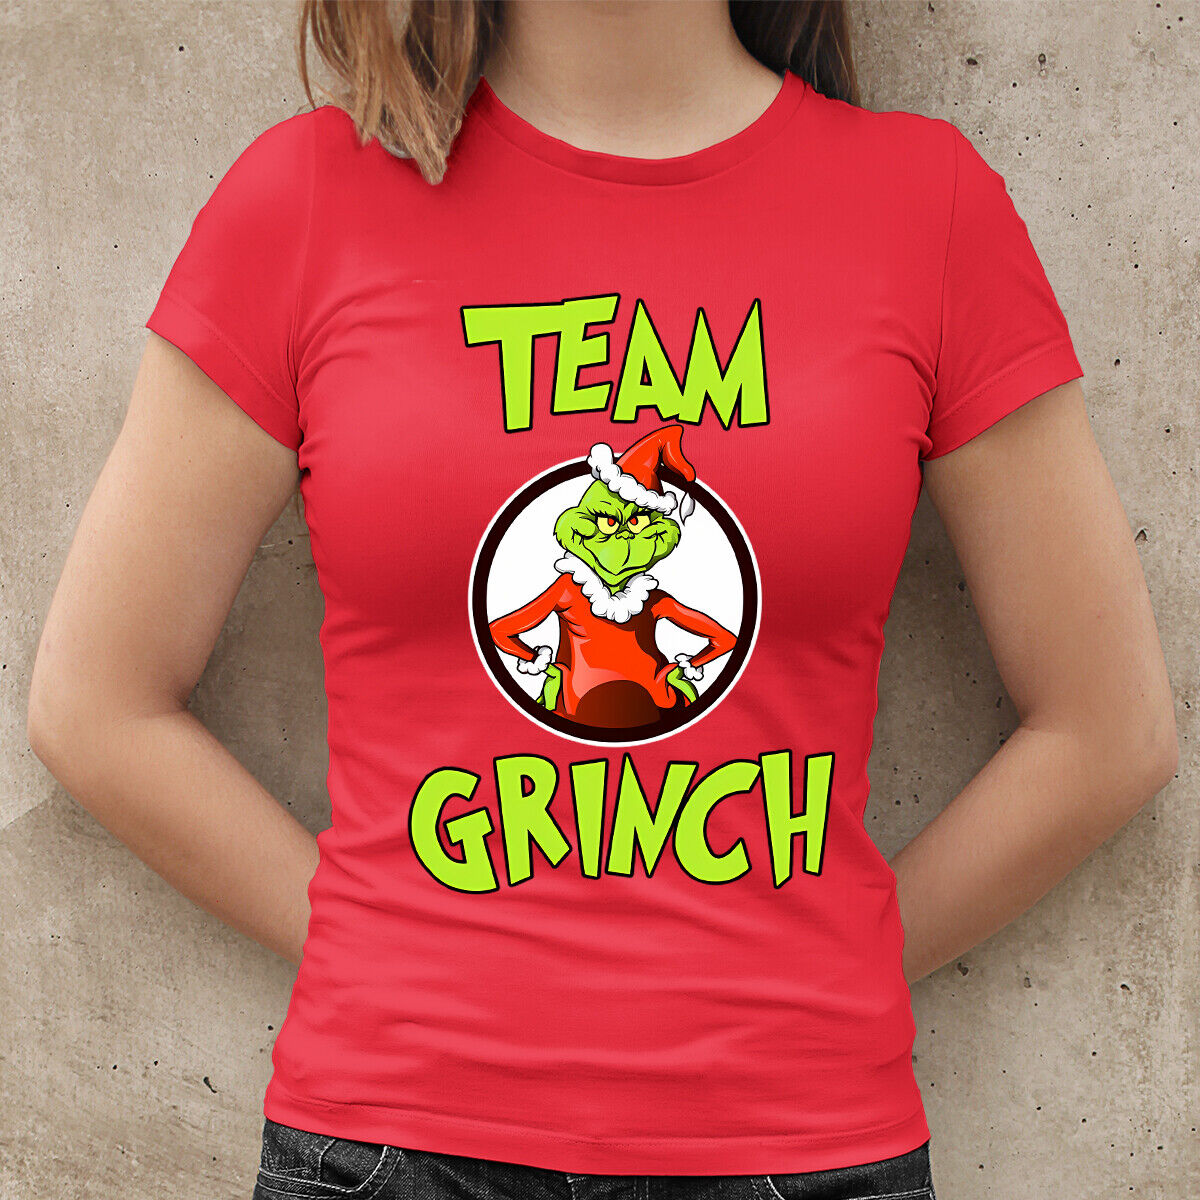 Grinch team vánoční tričko dámské červené